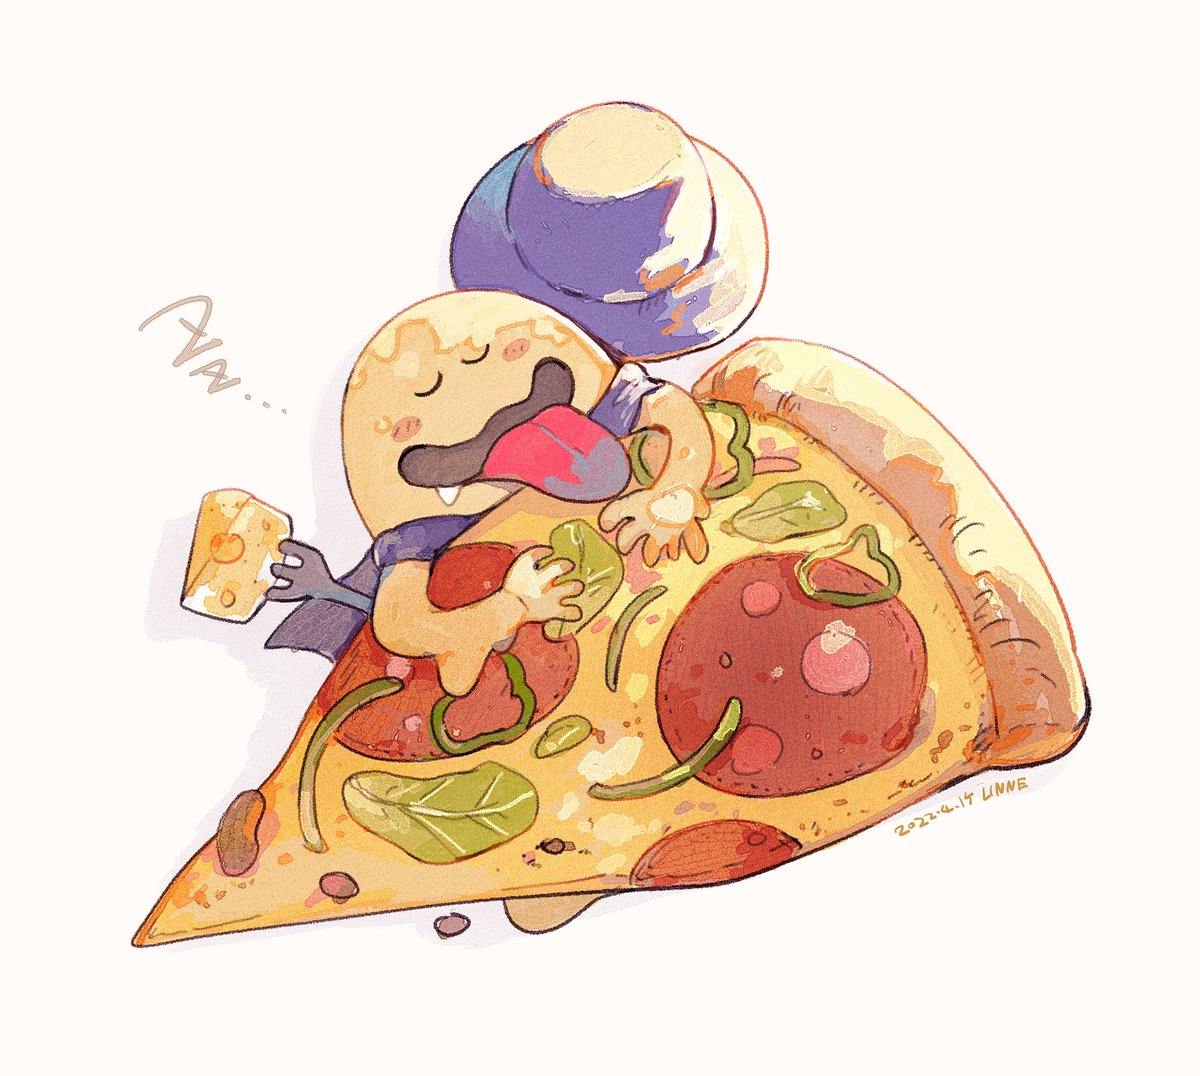 「フォンデュのお気に入りピザ布団🍕🧀💤 」|LINNE₍Ꙭ̂₎のイラスト